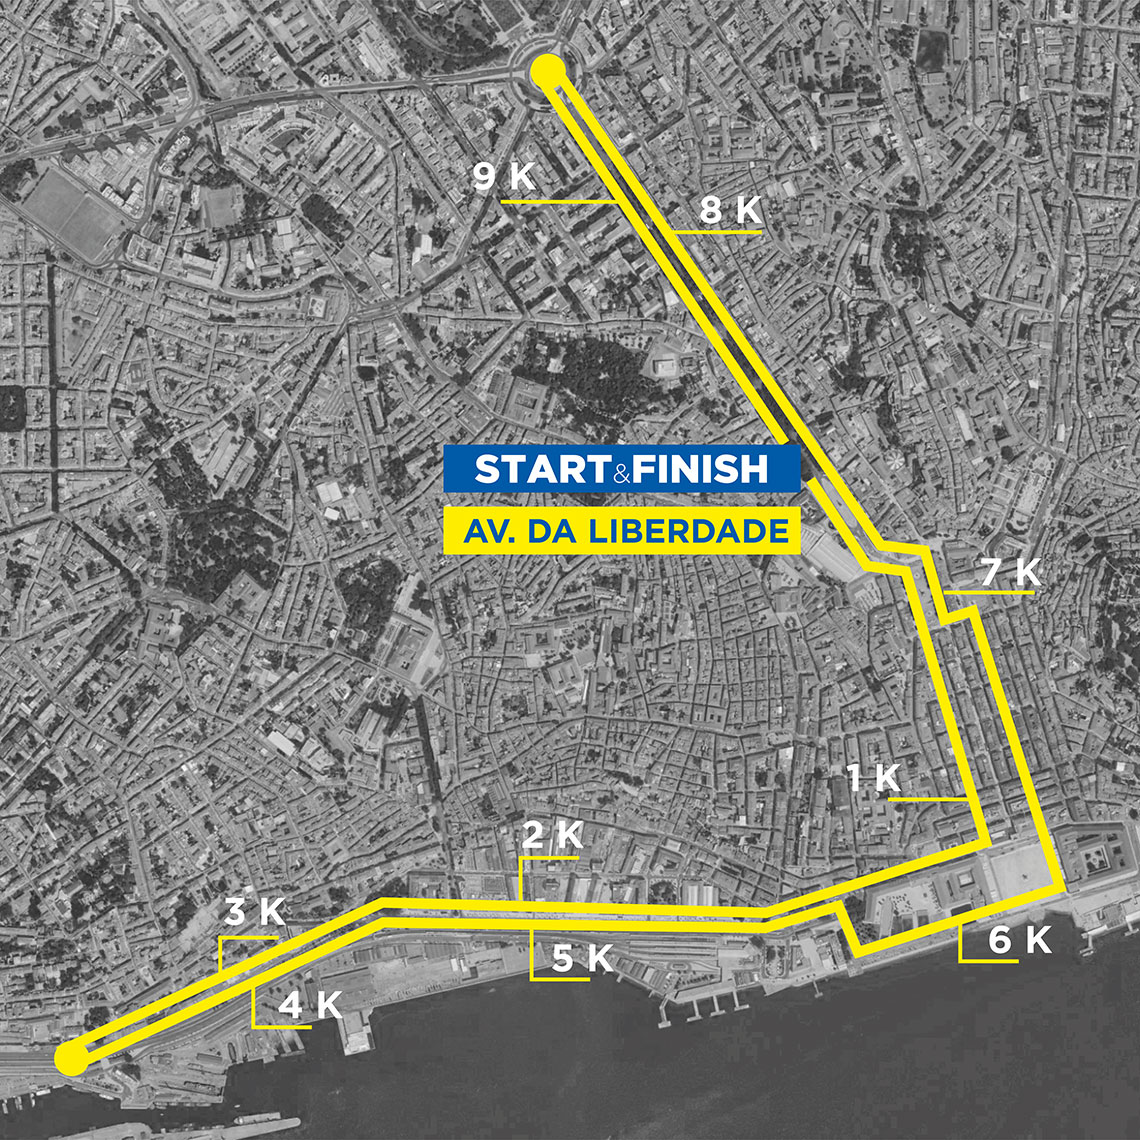 Course map of the LIDL São Silvestre de Lisboa